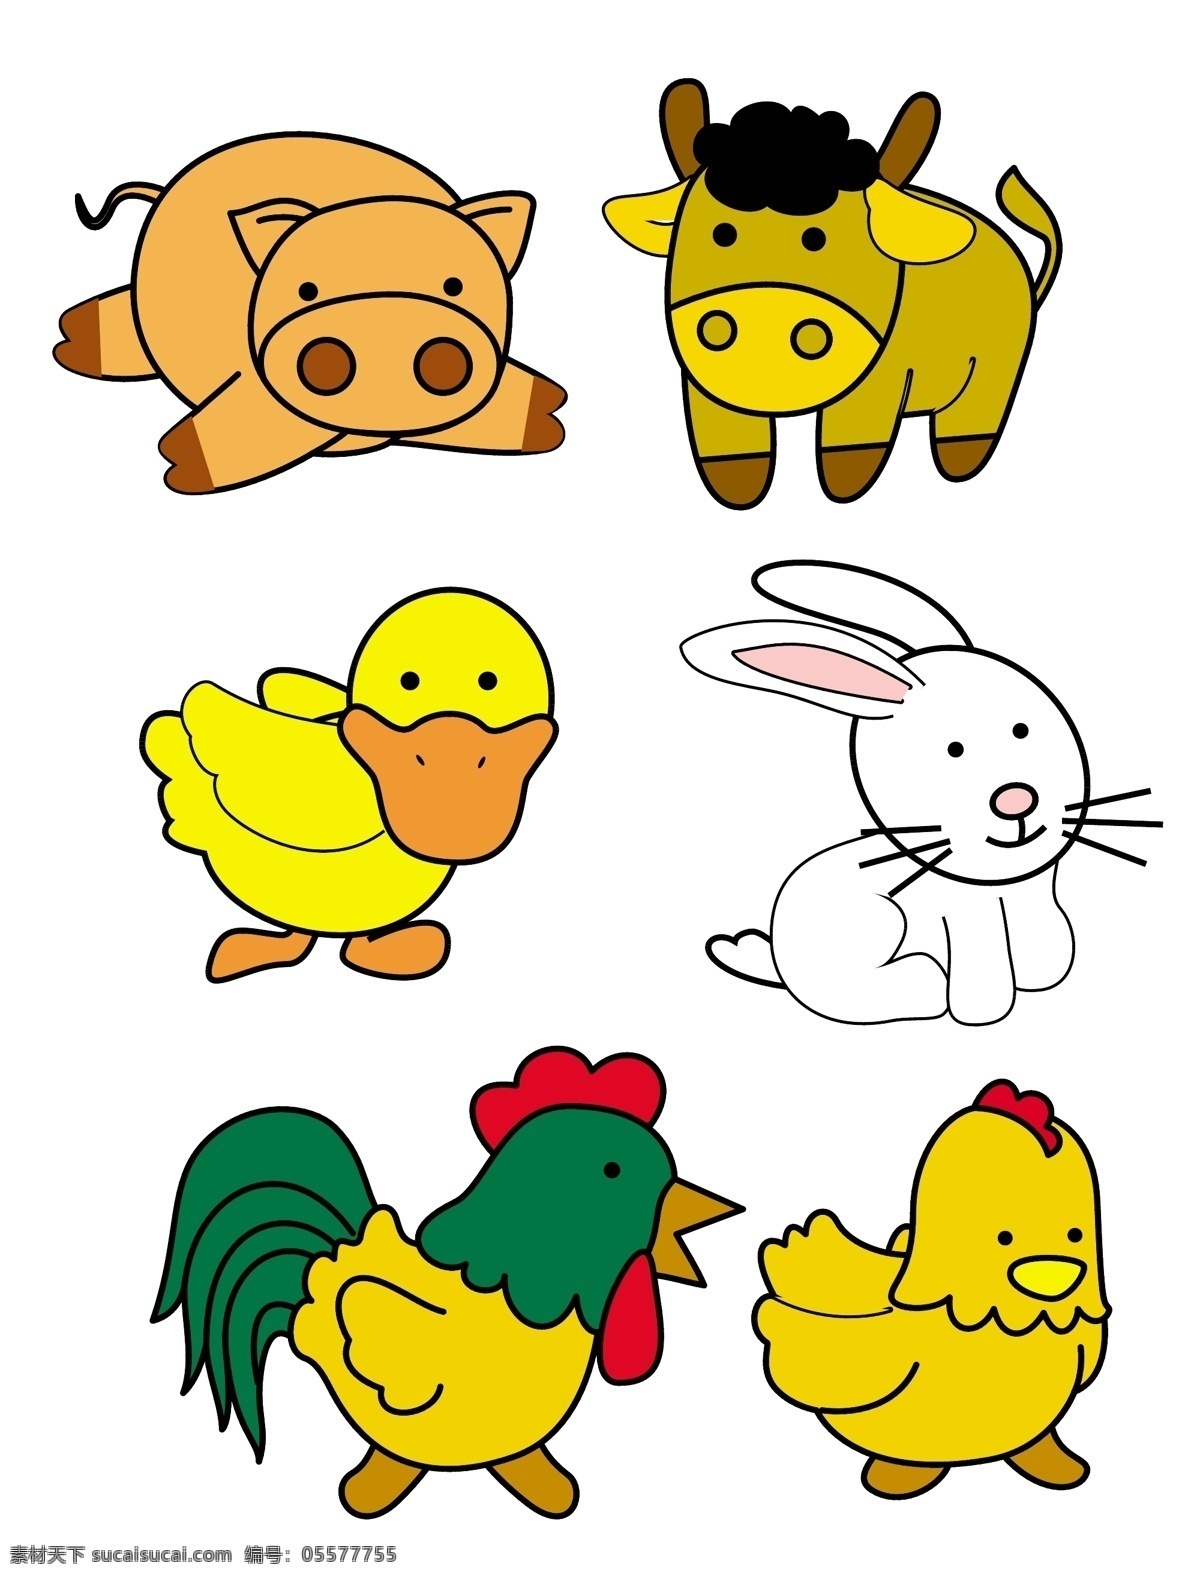 卡通动物 农场动物 猪 马 鸭子 兔子 公鸡 母鸡 可爱 ai源文件 cmyk格式 矢量图 卡通动物设计 卡通设计